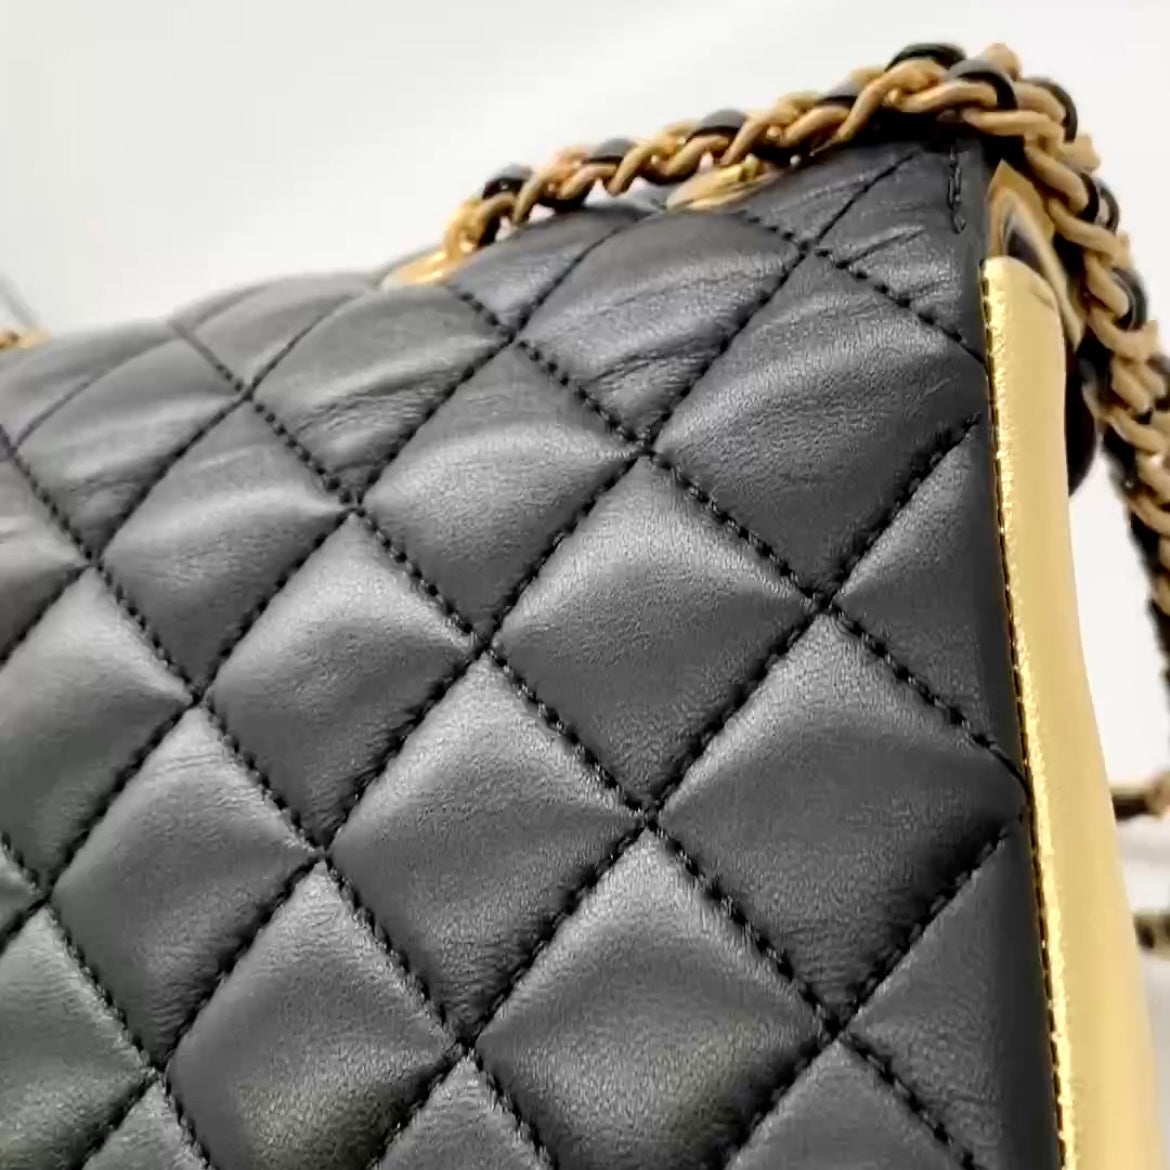 Preloved Chanel Black n Gold Limited Flap Bag Mini